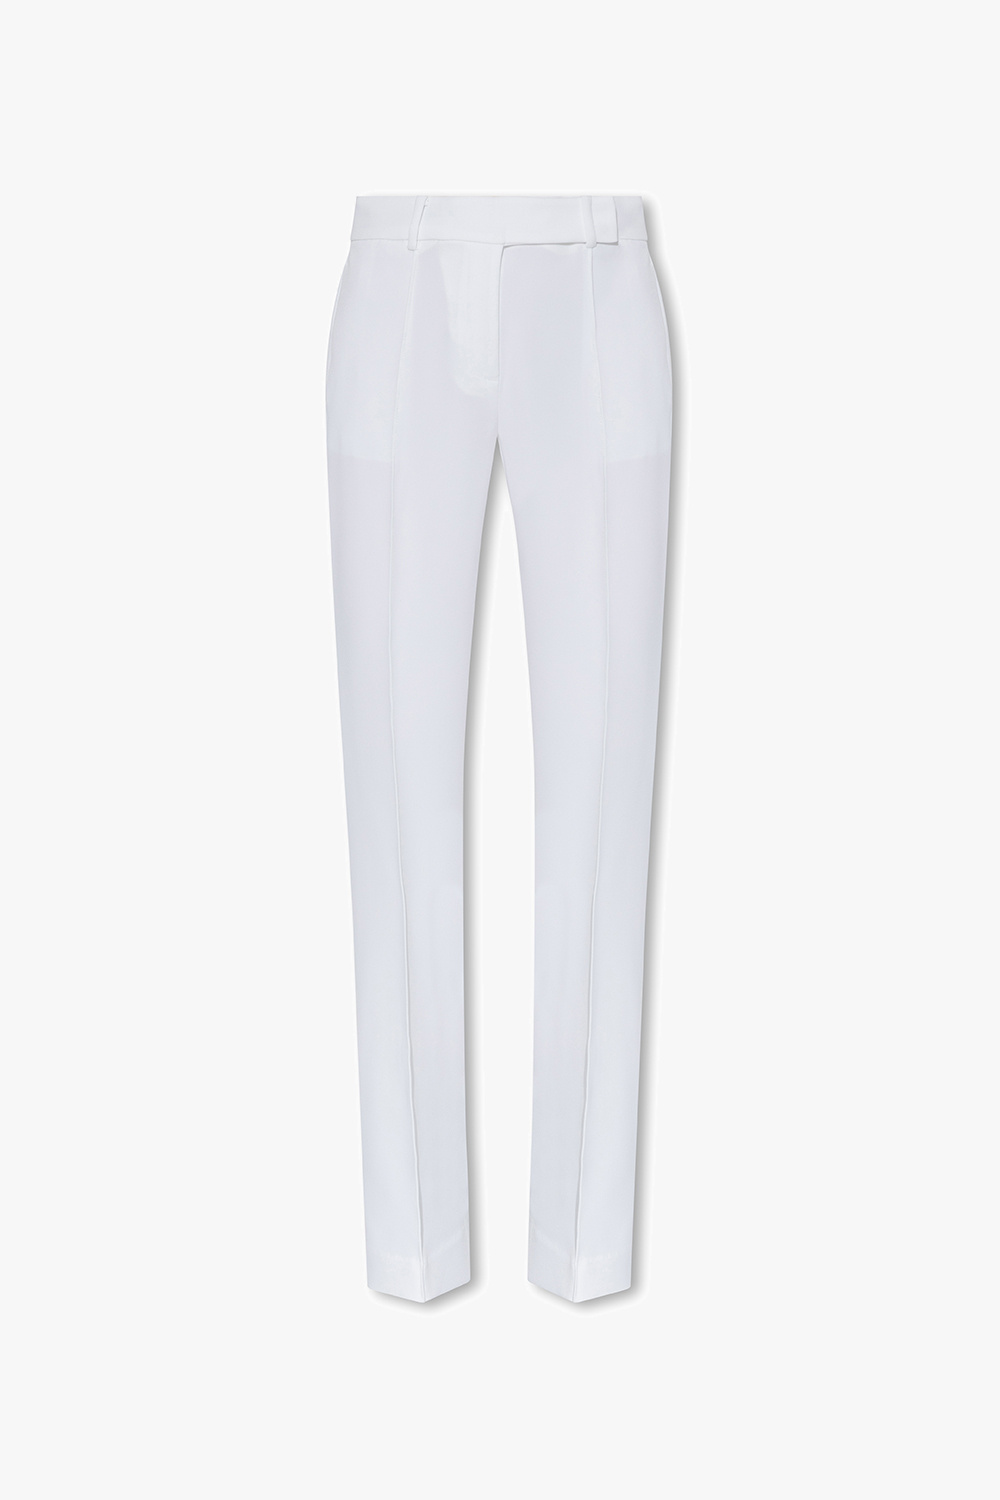 Michael Michael Kors Pleat-front trousers